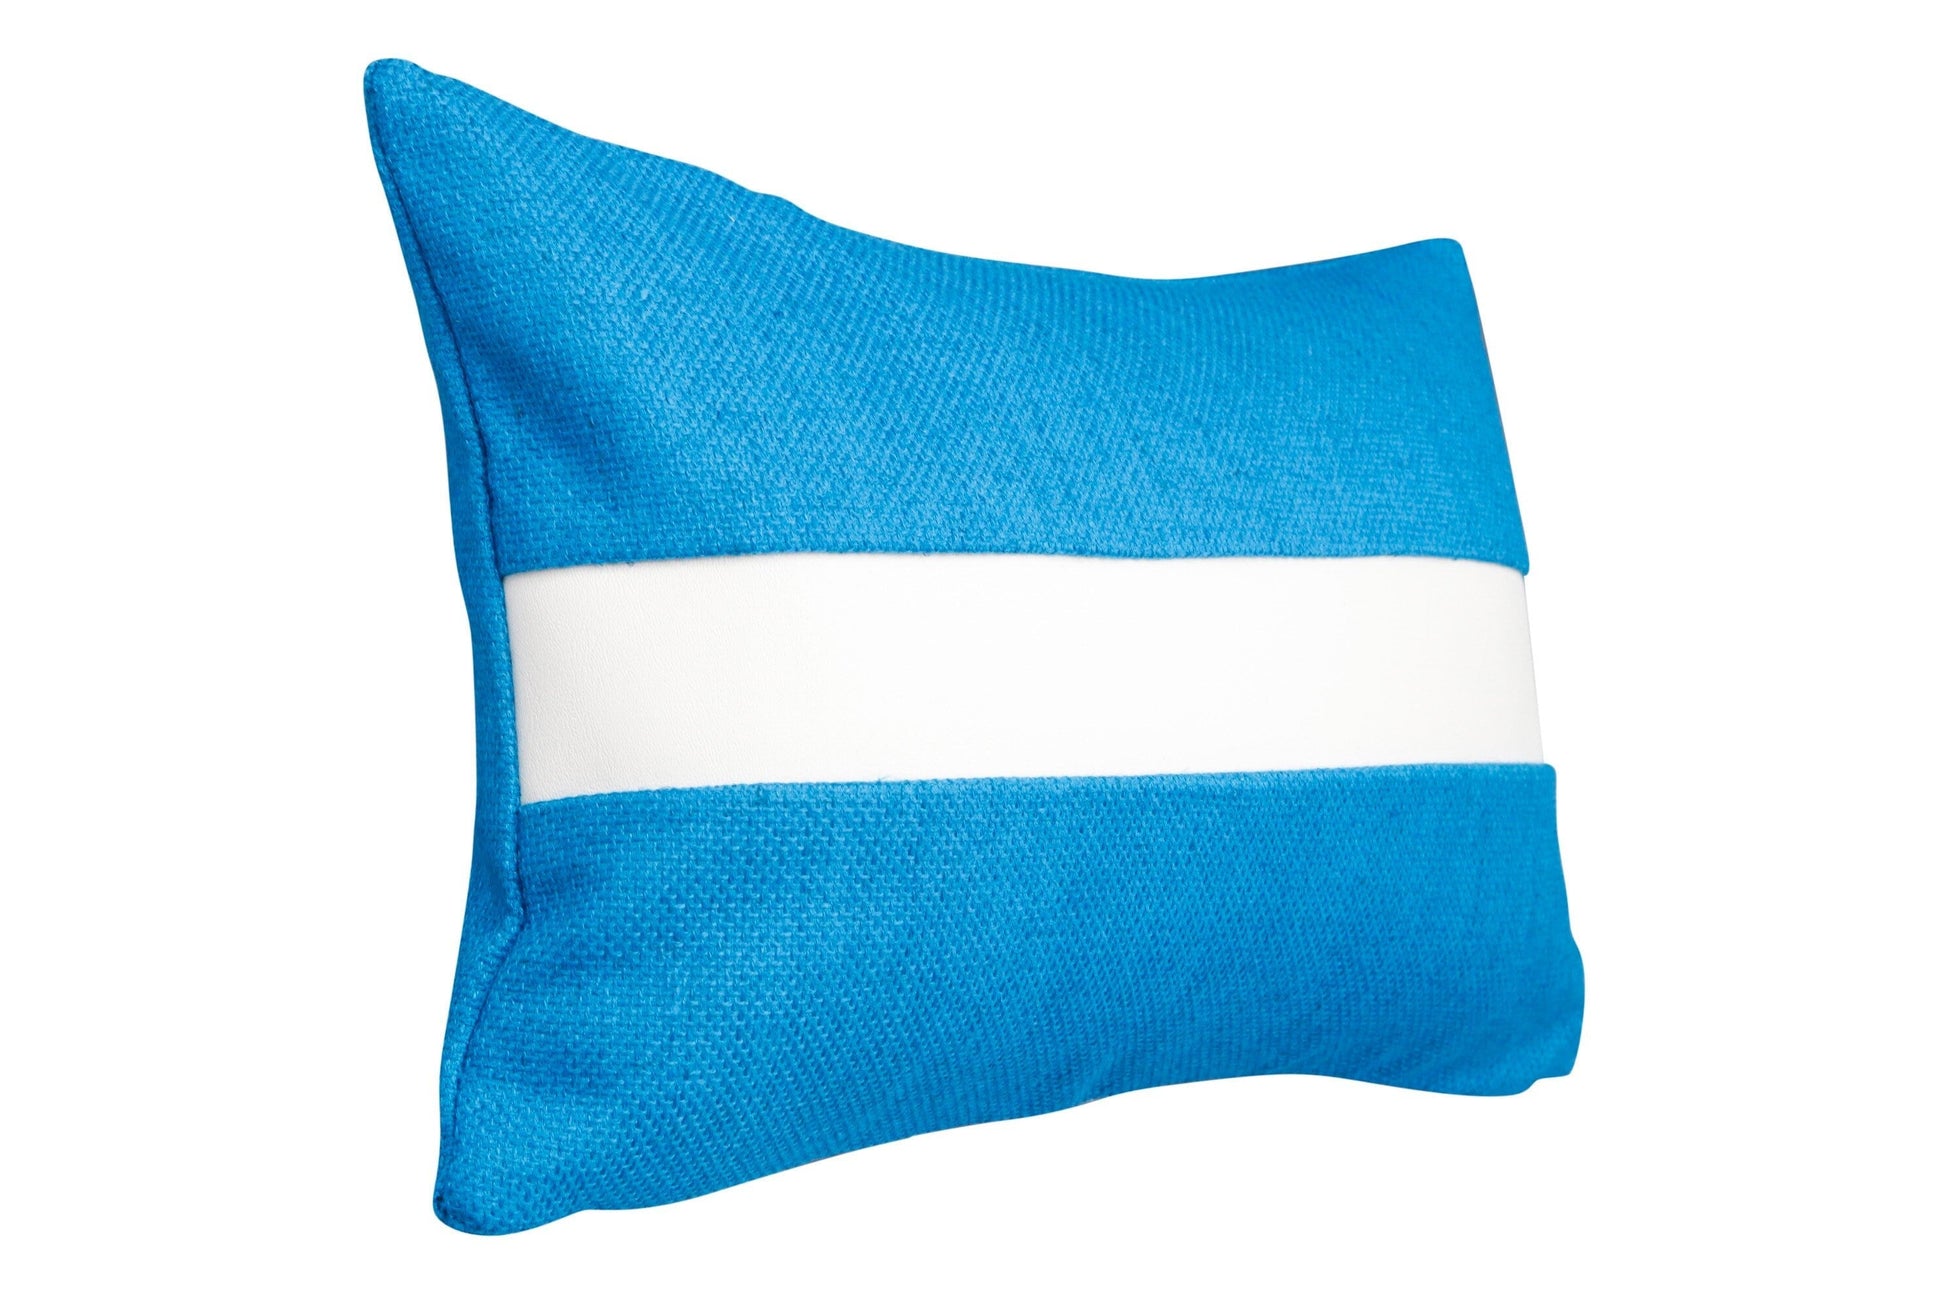 Handmade artisan lumber pillow blue linen with white Naugahyde stripe